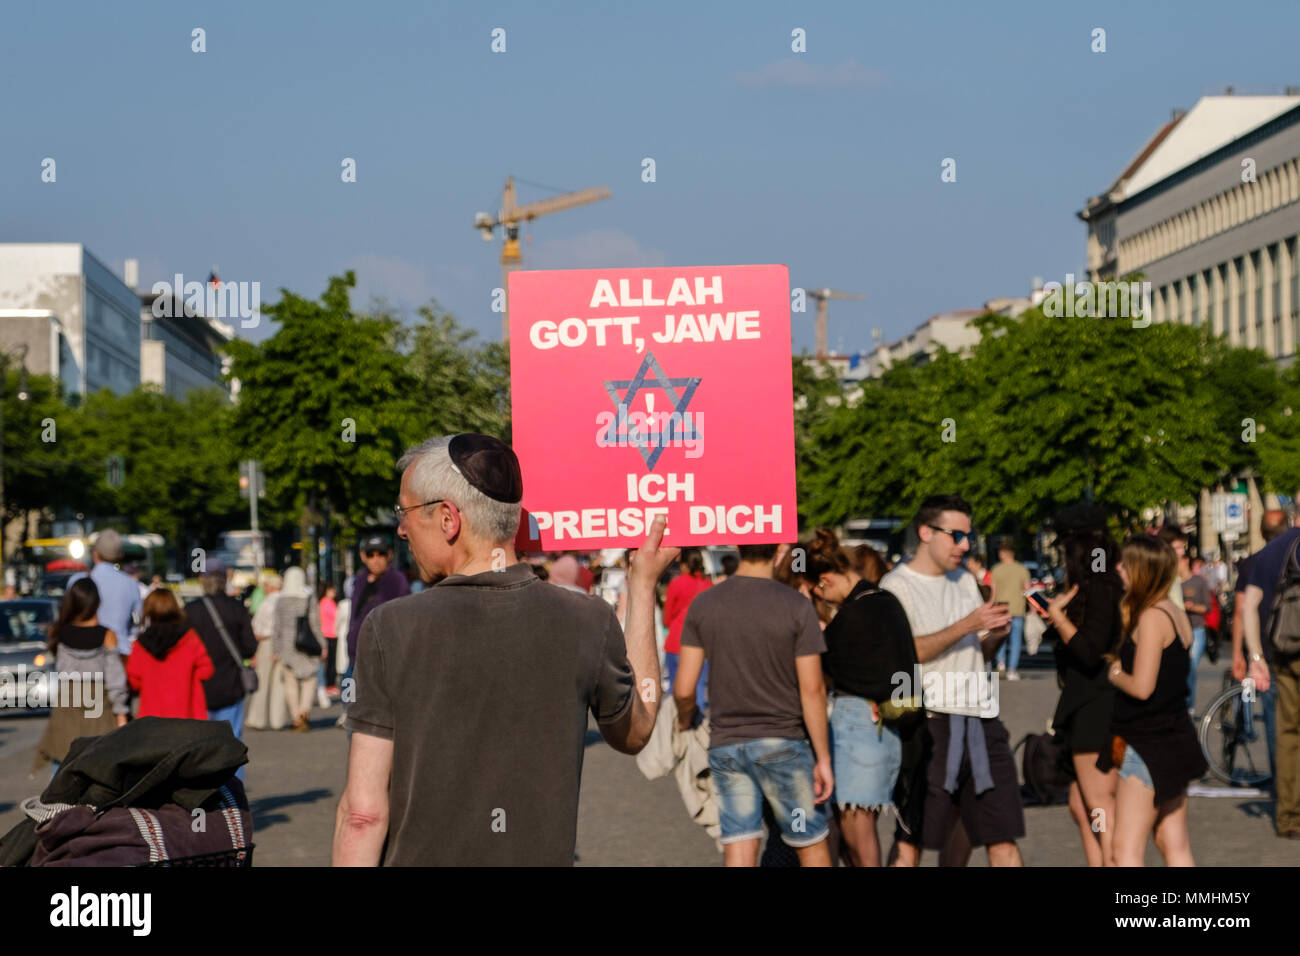 Berlin, Allemagne - mai 2018 : Man holding sign pour la tolérance religieuse, louant Dieu, Allah et Jawe (éternel) à Berlin, Allemagne Banque D'Images